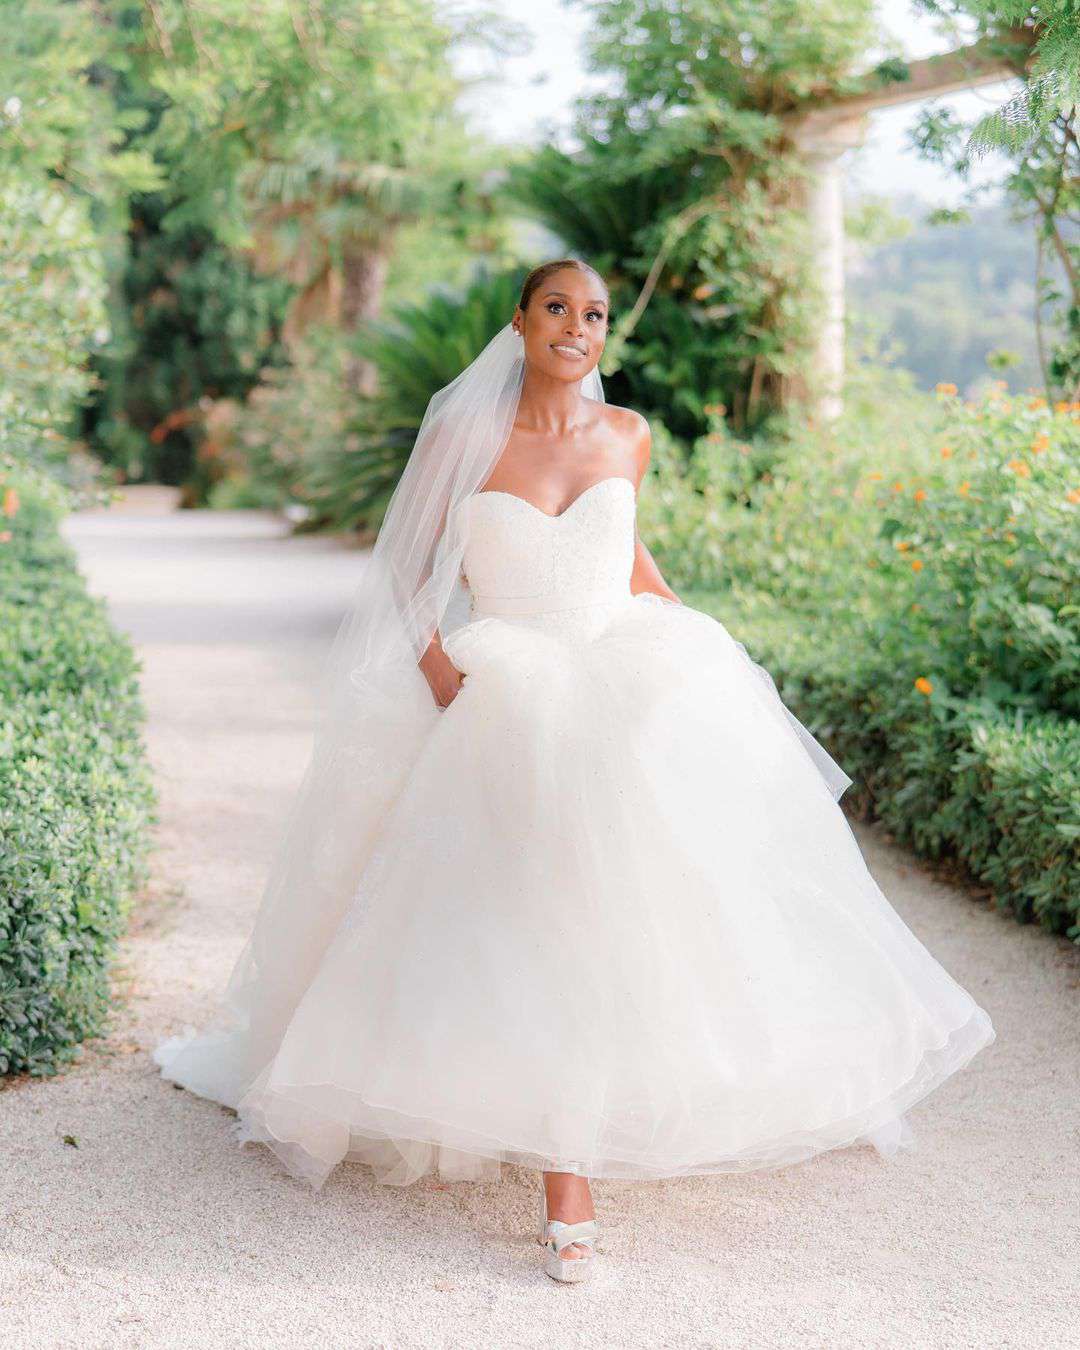 Chelsea ❣️ wedding dress best 2021 date clinton Khloe Kardashian